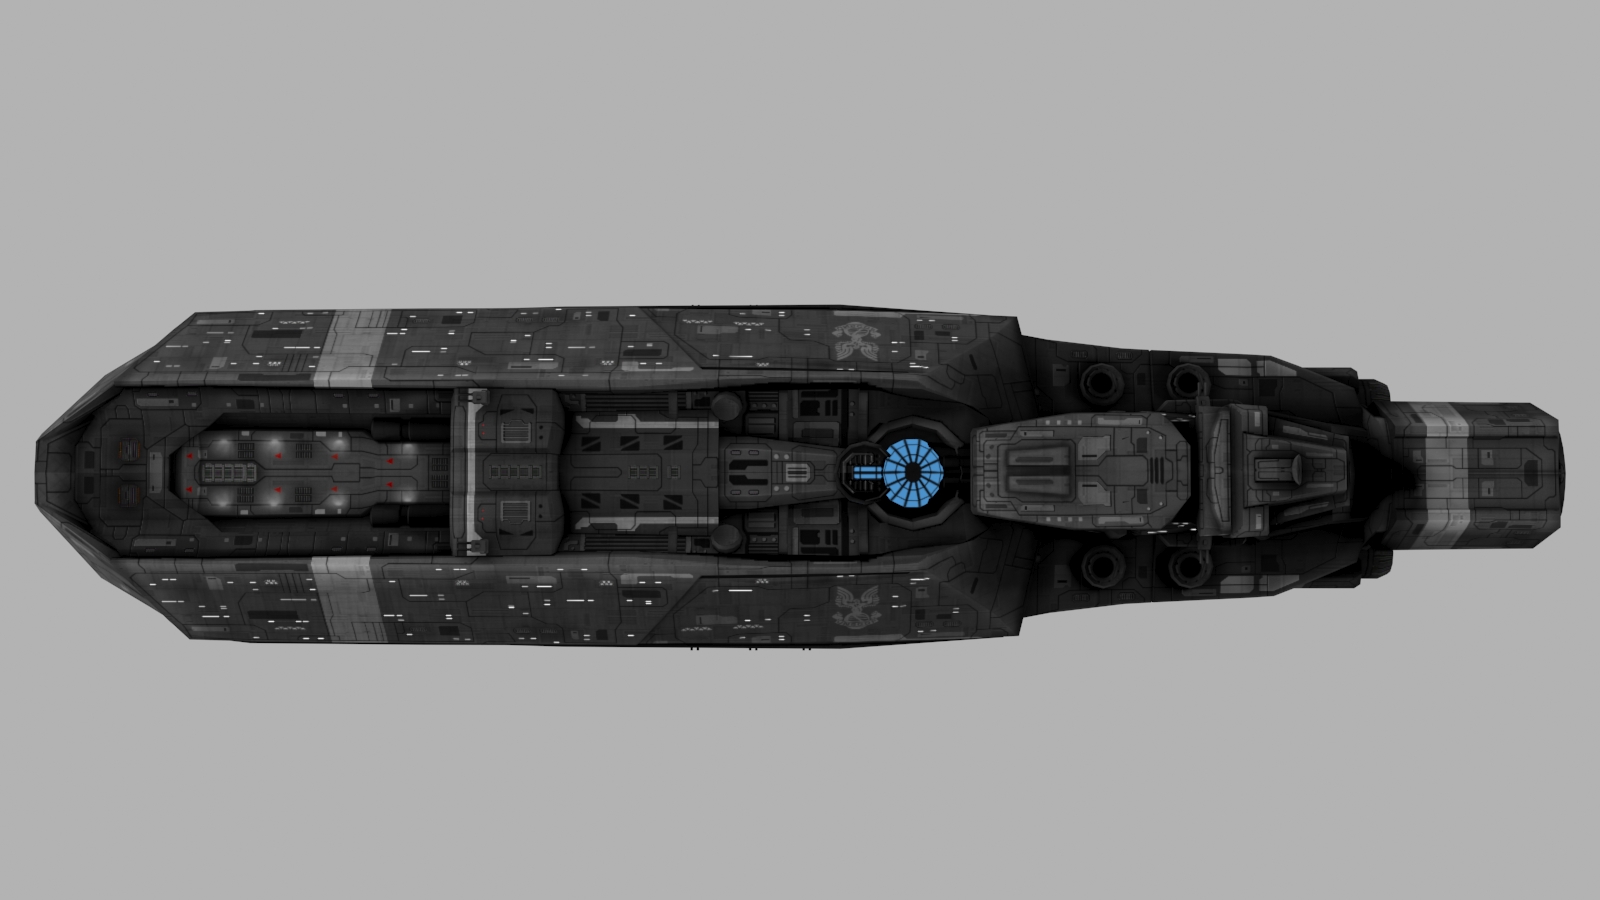 Orion class assault carrier